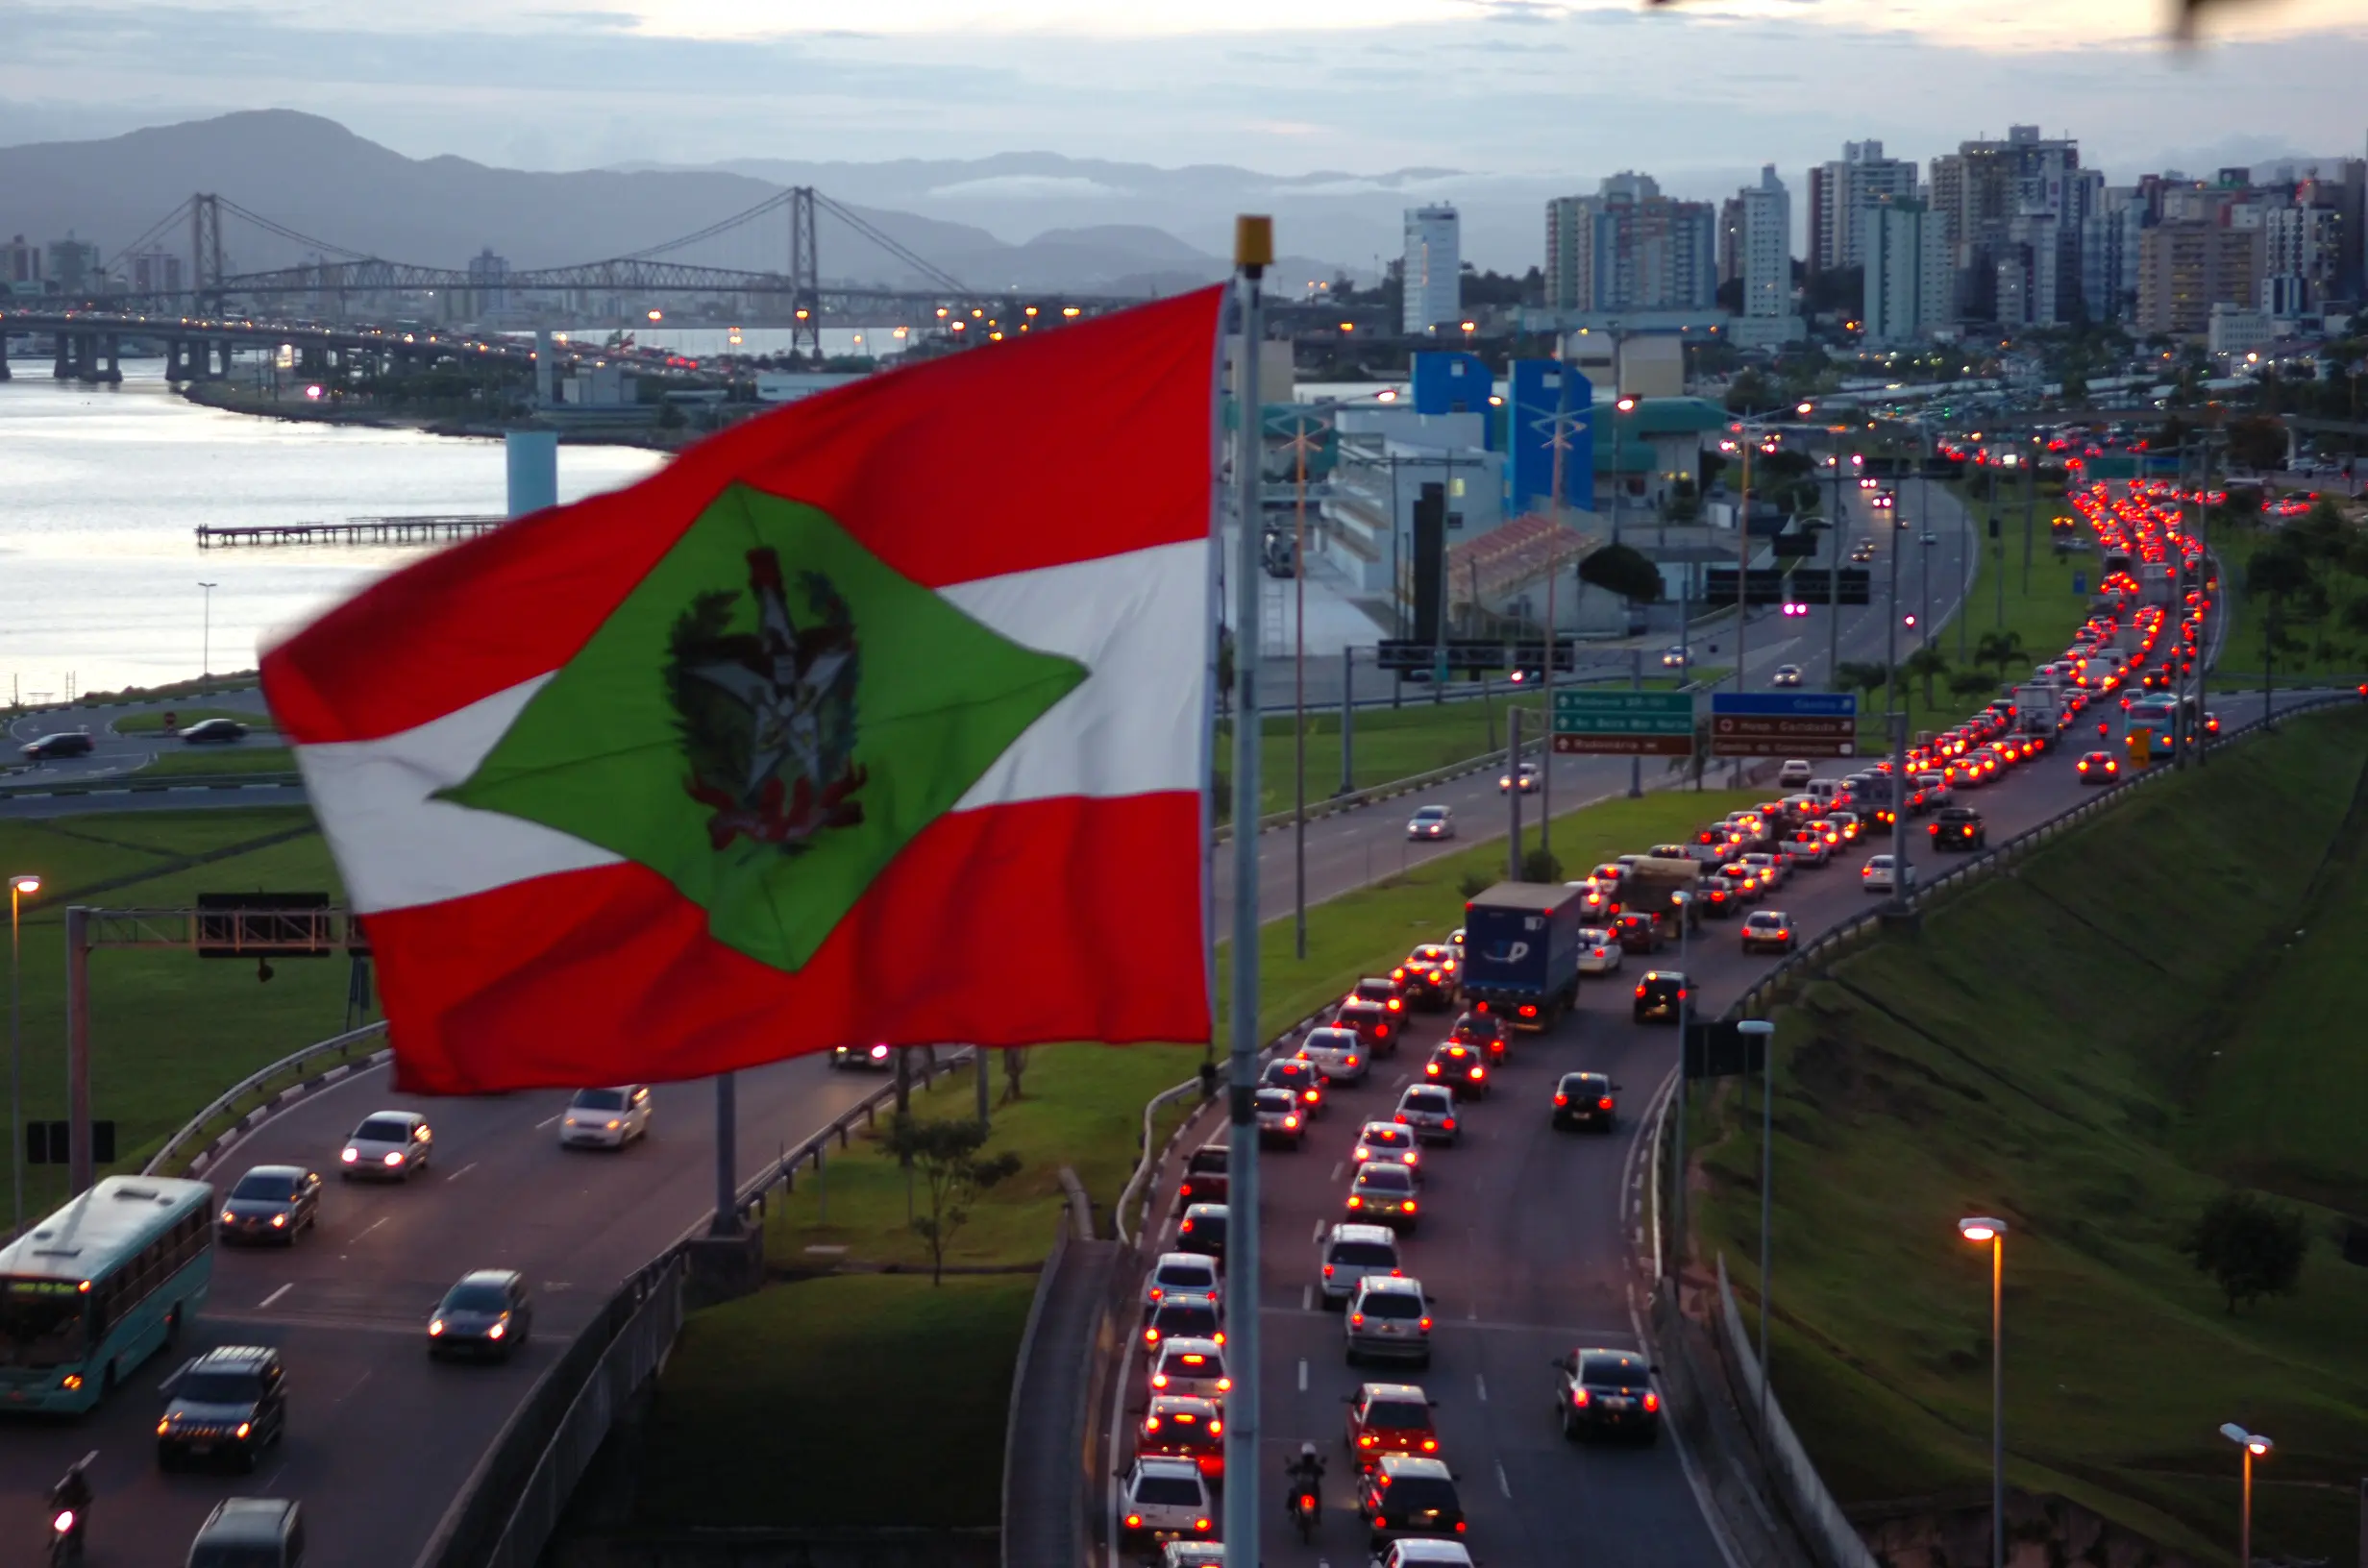 Bandeira de Santa Catarina, ao fundo uma cidade